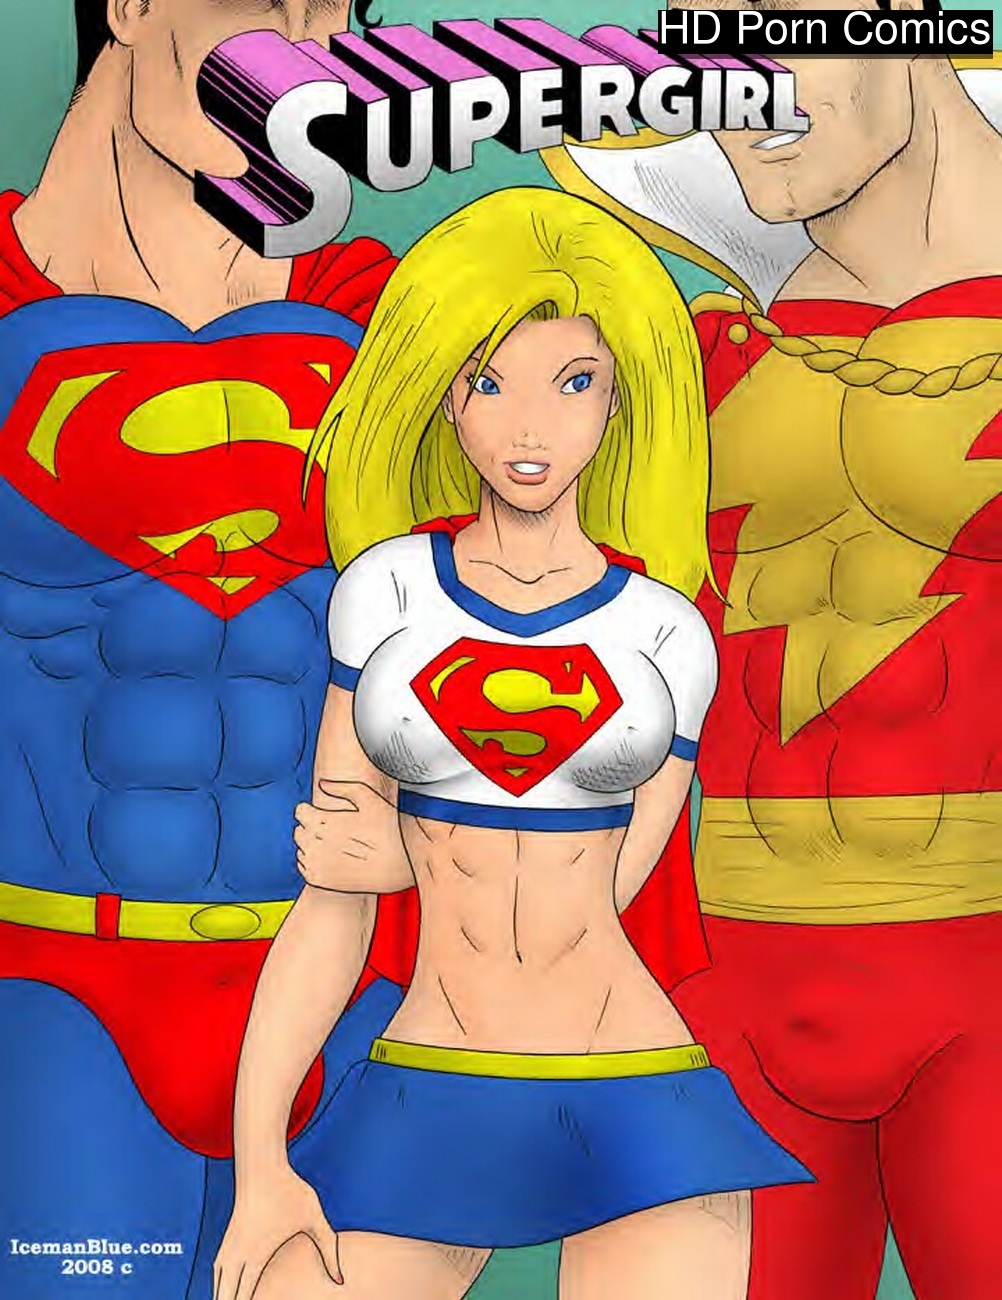 Supergirl Superhero Porn Hd - Supergirl 1 comic porn â€“ HD Porn Comics